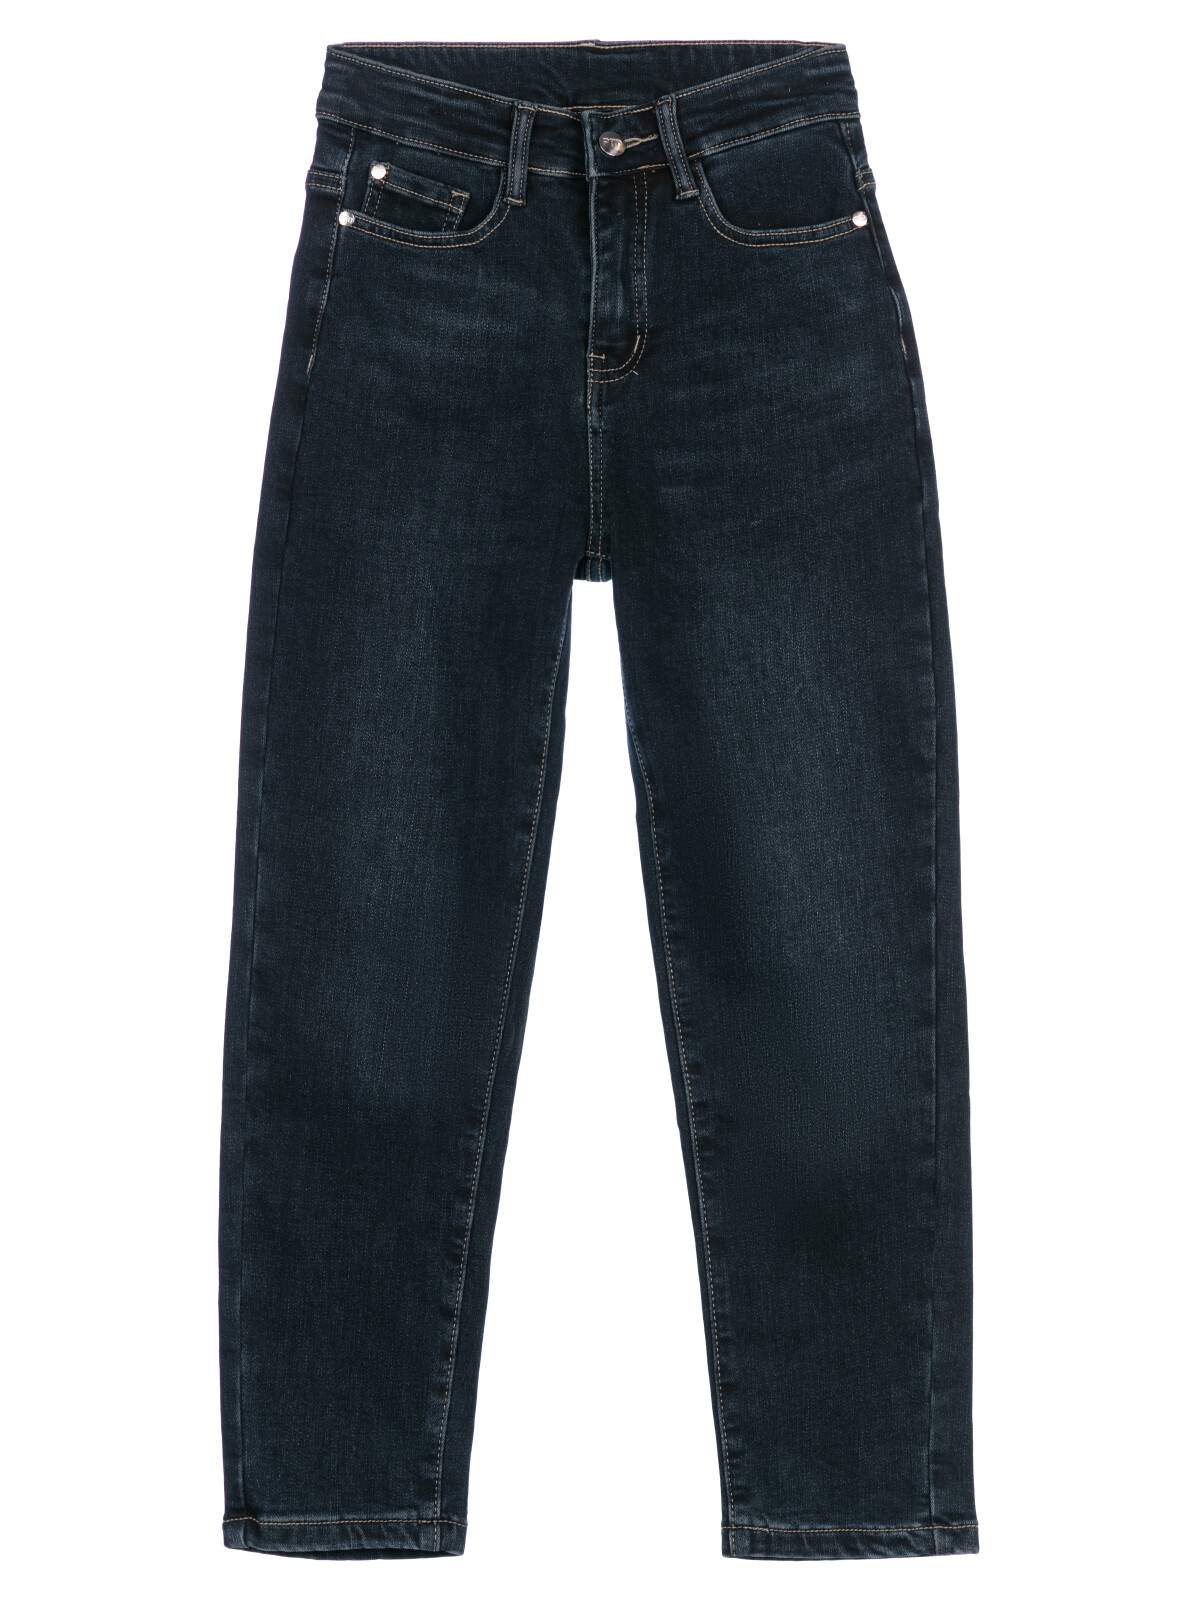 Брюки текстильные джинсовые утепленные флисом для мальчиков PlayToday, тёмно-синий, 128